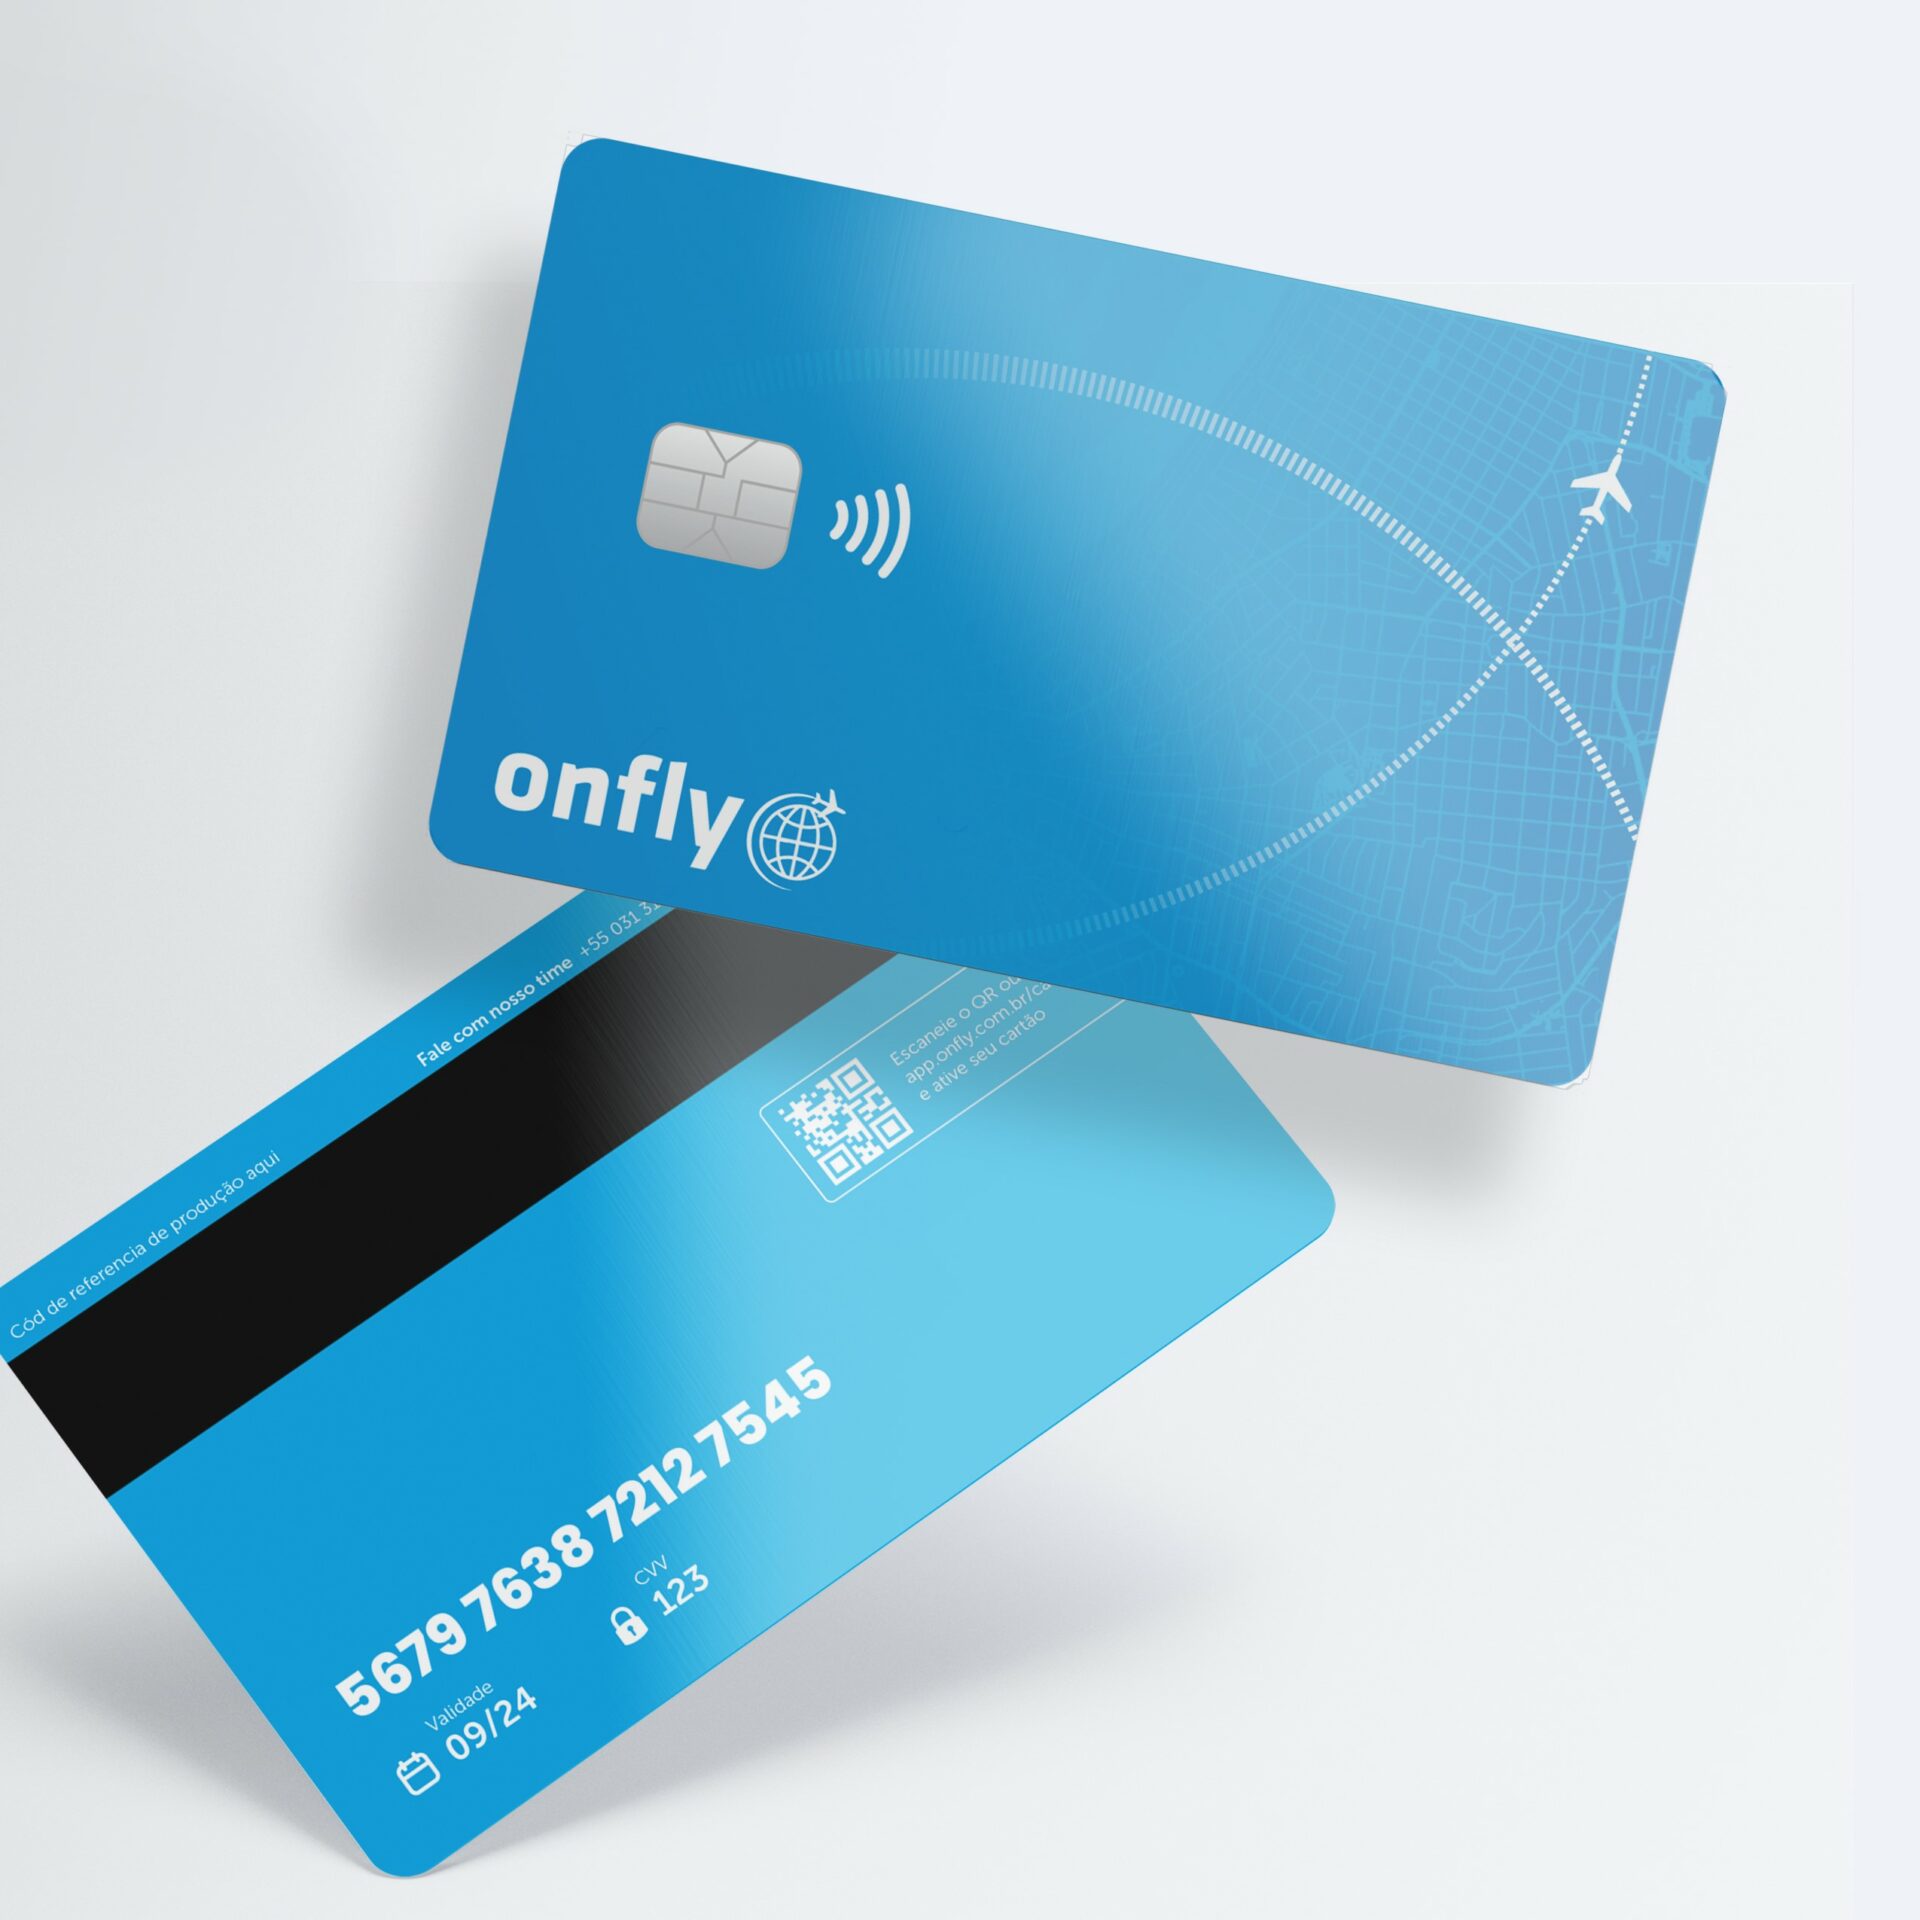 Onfly, além de travel tech, agora é fintech e lança cartão corporativo para viagens